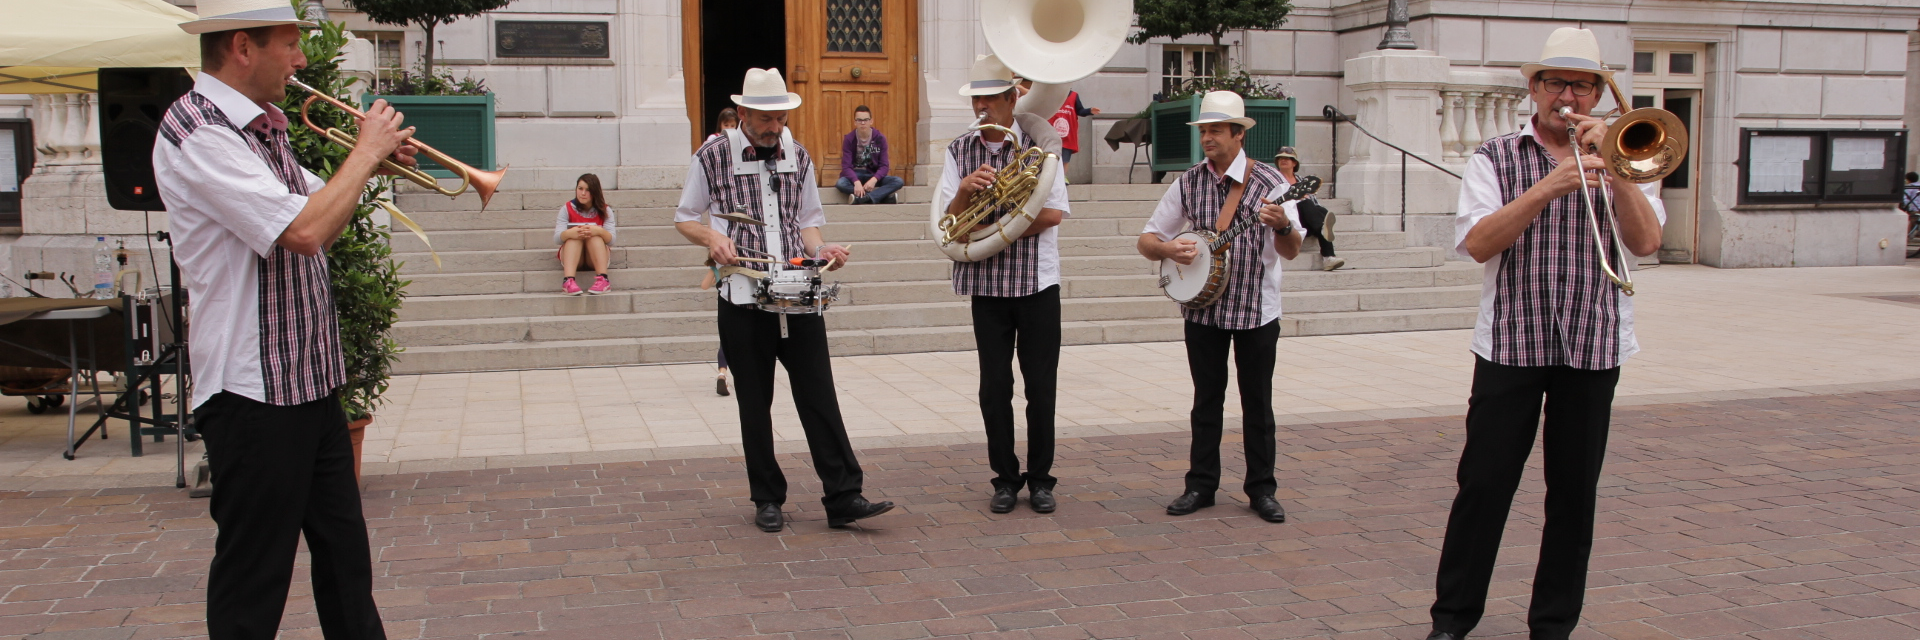 Hot Chili jazz Band, groupe de musique Jazz en représentation à Savoie - photo de couverture